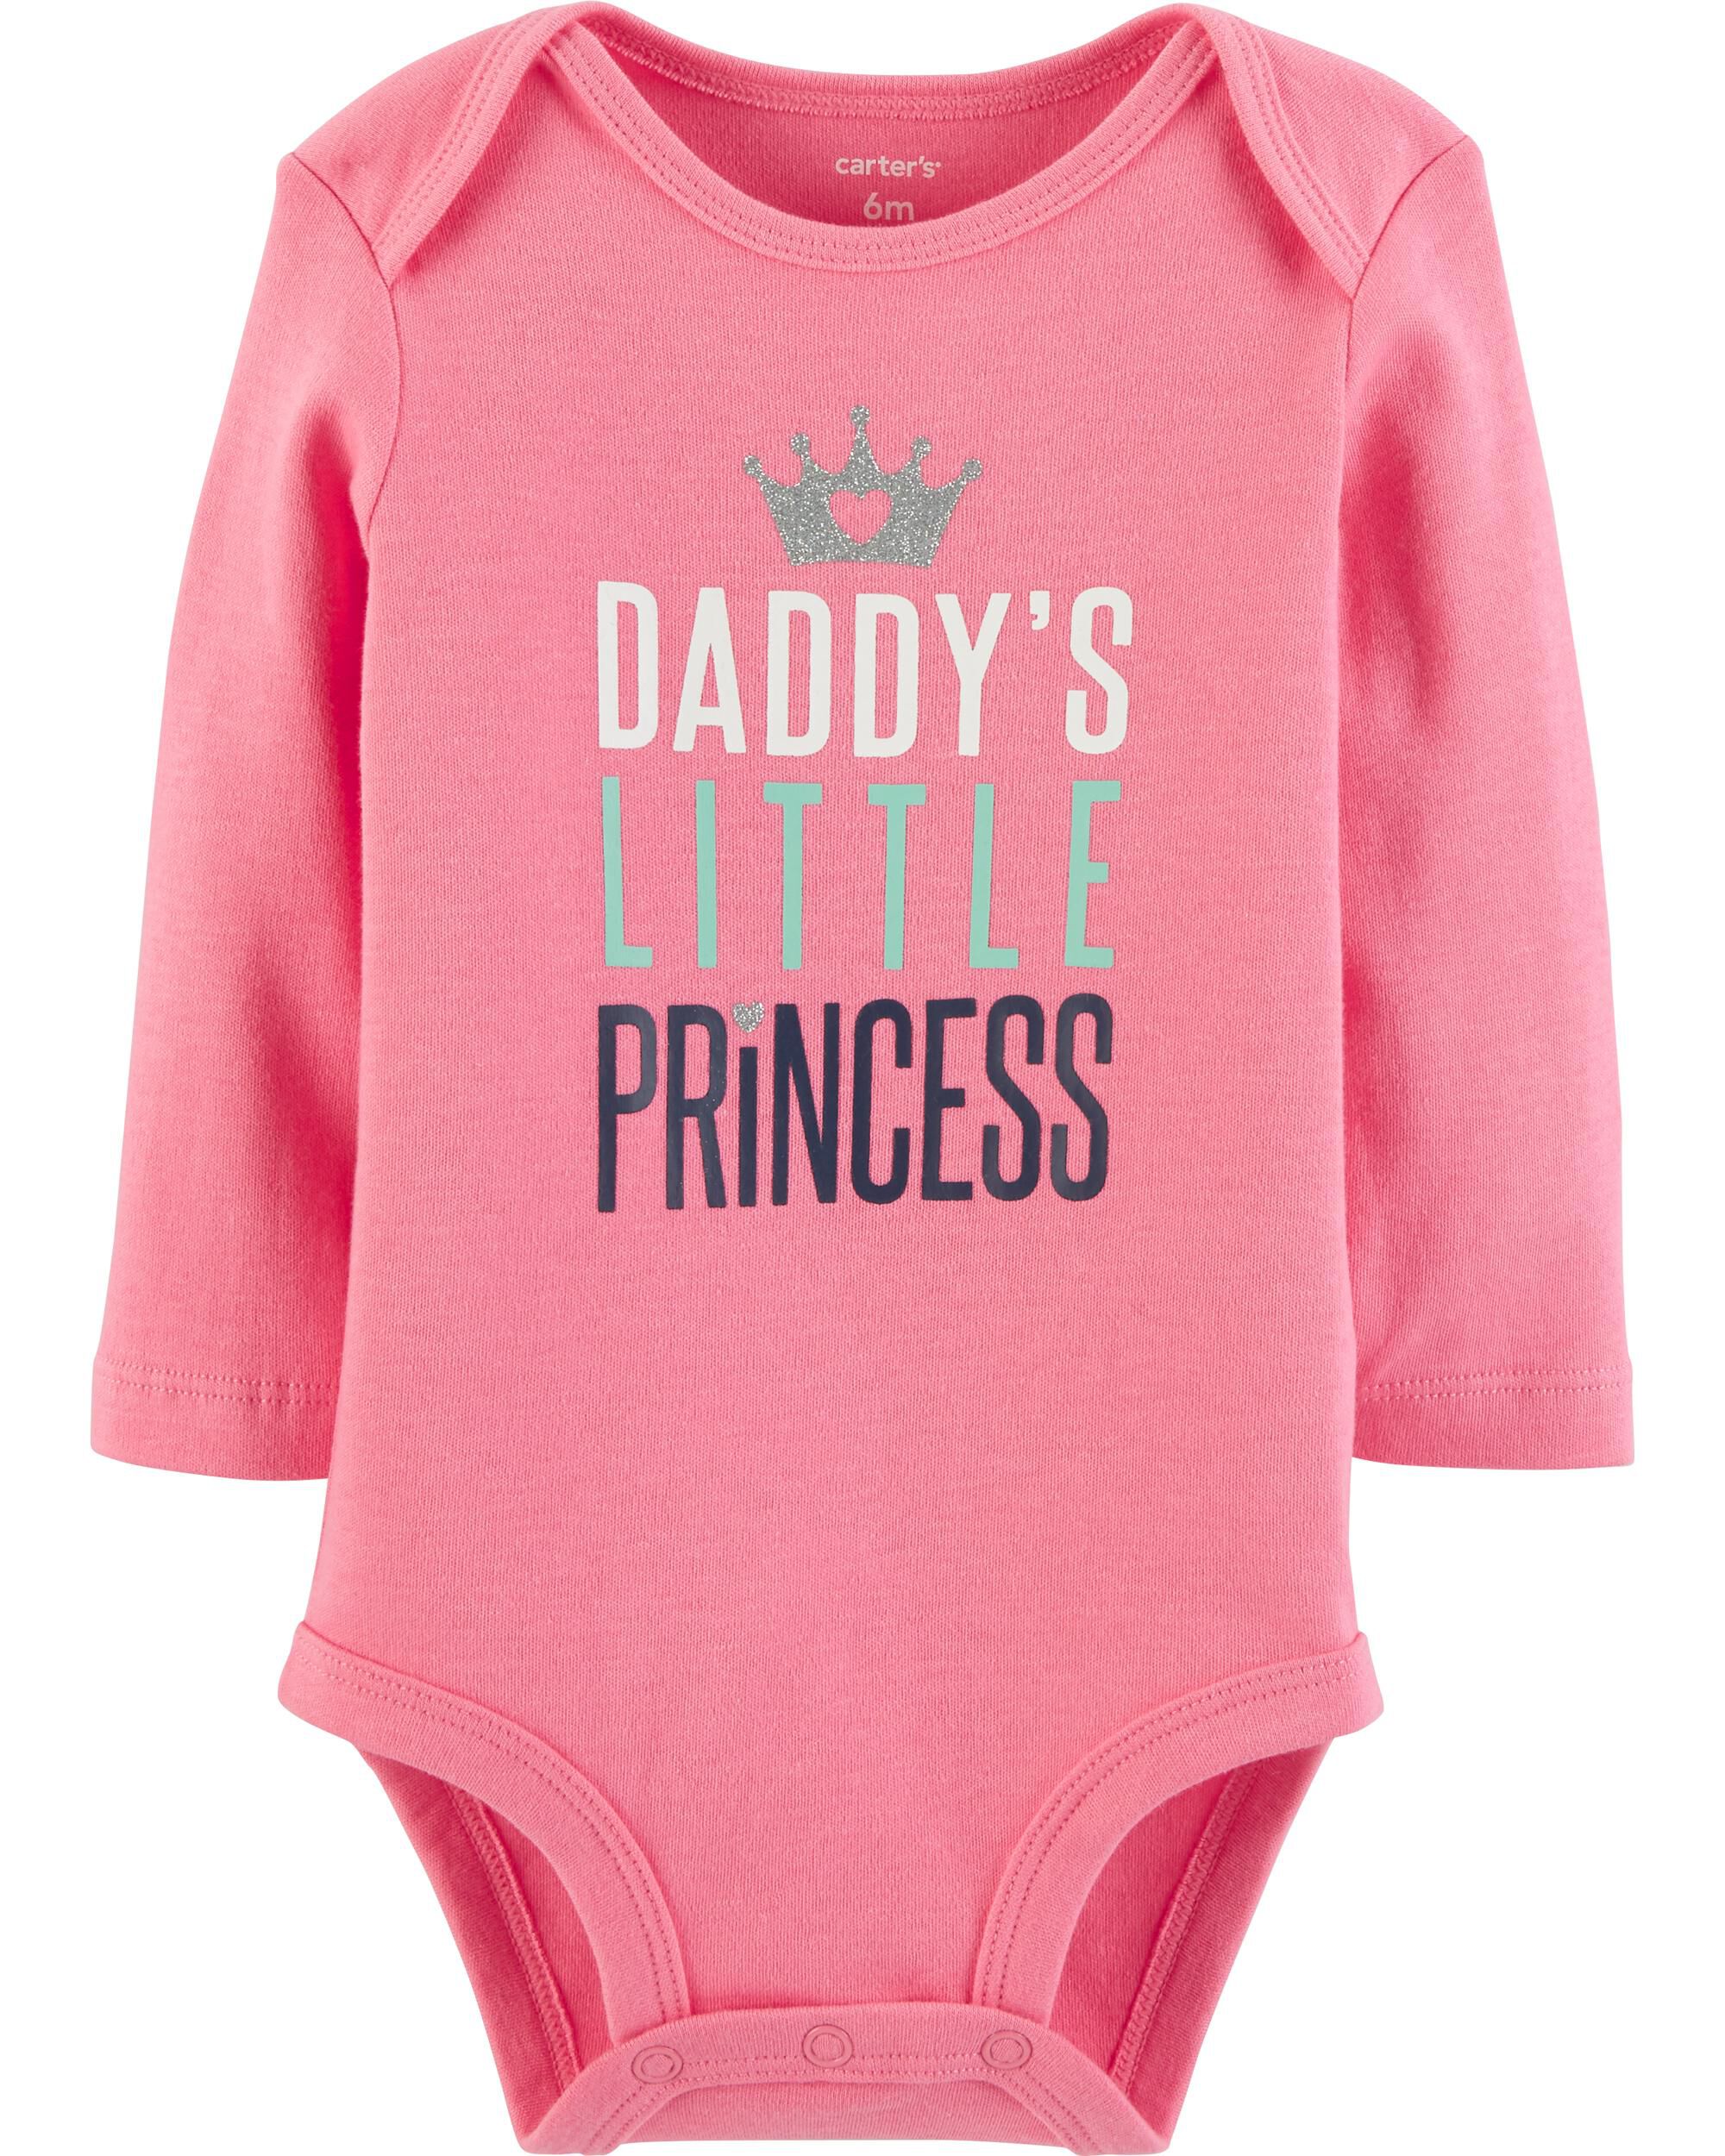 daddys little princess onesie